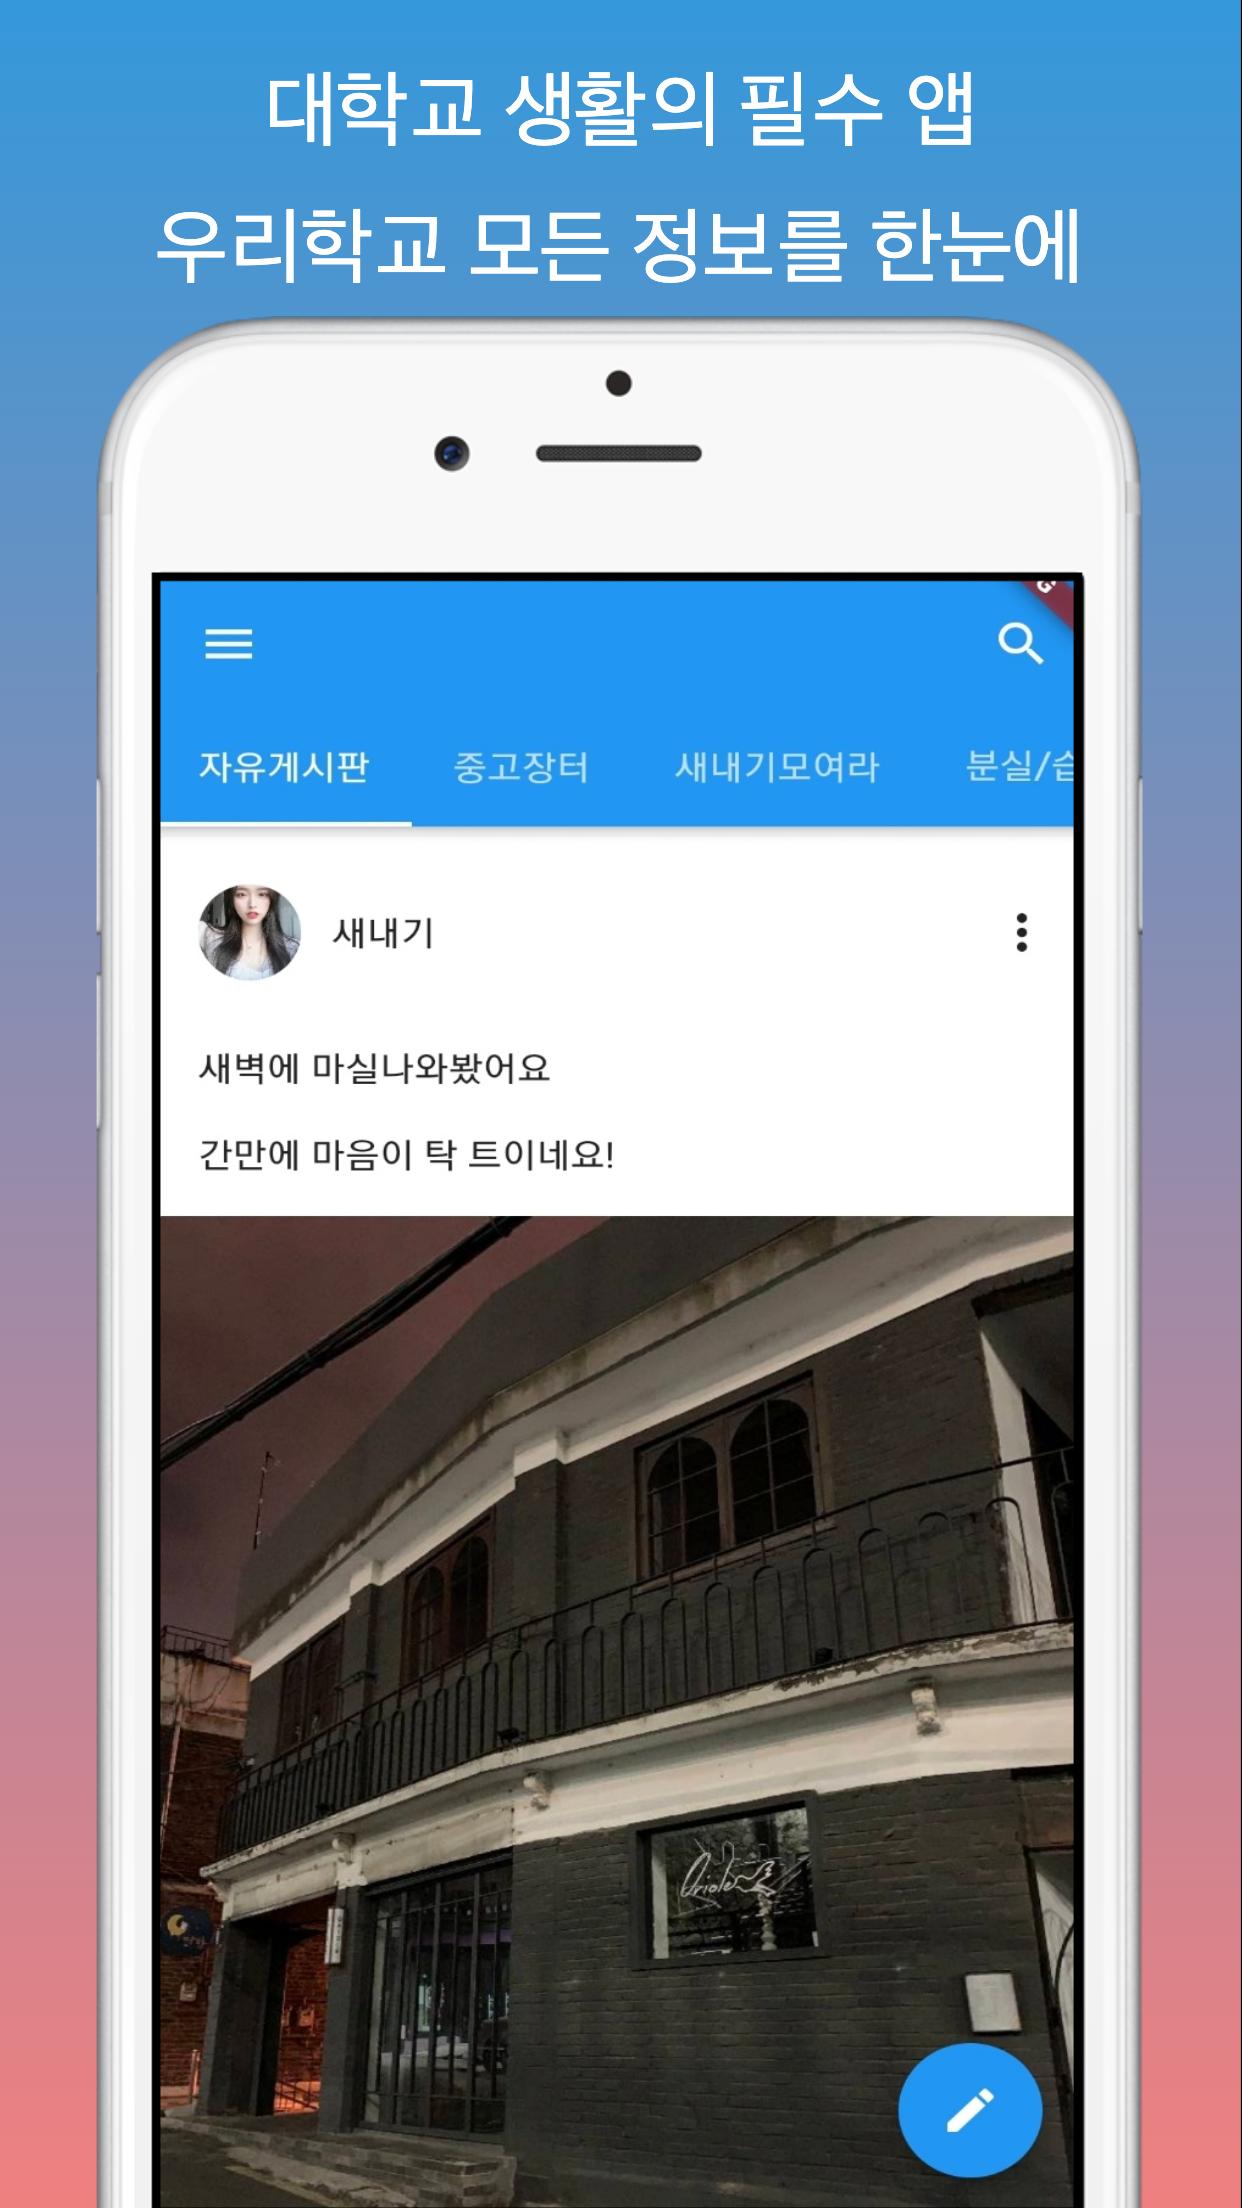 전남대 커뮤니티 - 전남대학교 생활에 필요한 유용한 정보들을 에브리타임 이야기하는 SNS